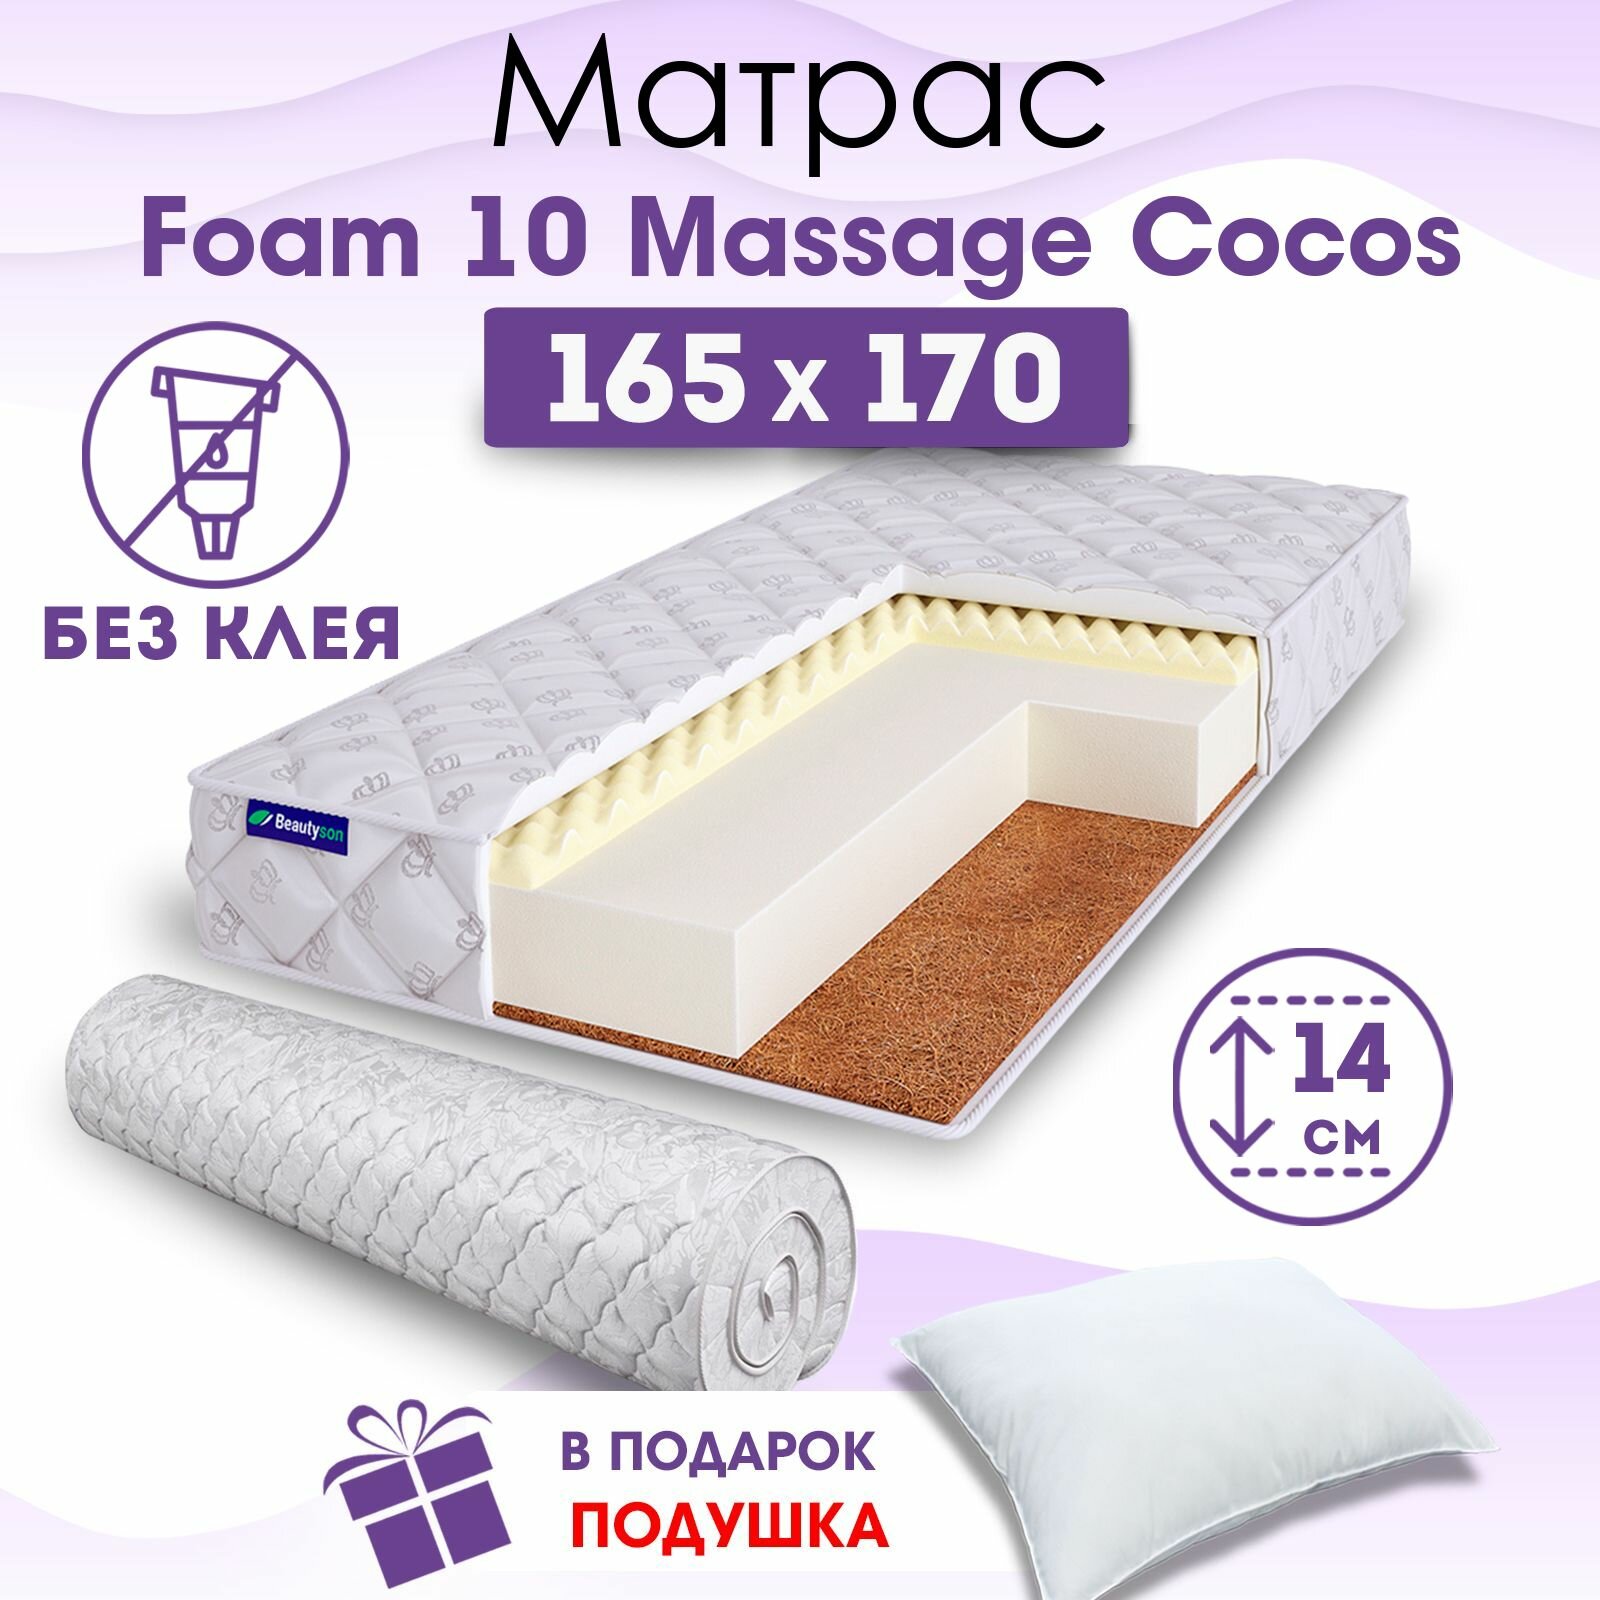 Ортопедический матрас Beautyson Foam 10 Massage Cocos без клея, 165х170, 14 см, беспружинный, двухспальный, на кровать, для дивана, мягкий, не высокий